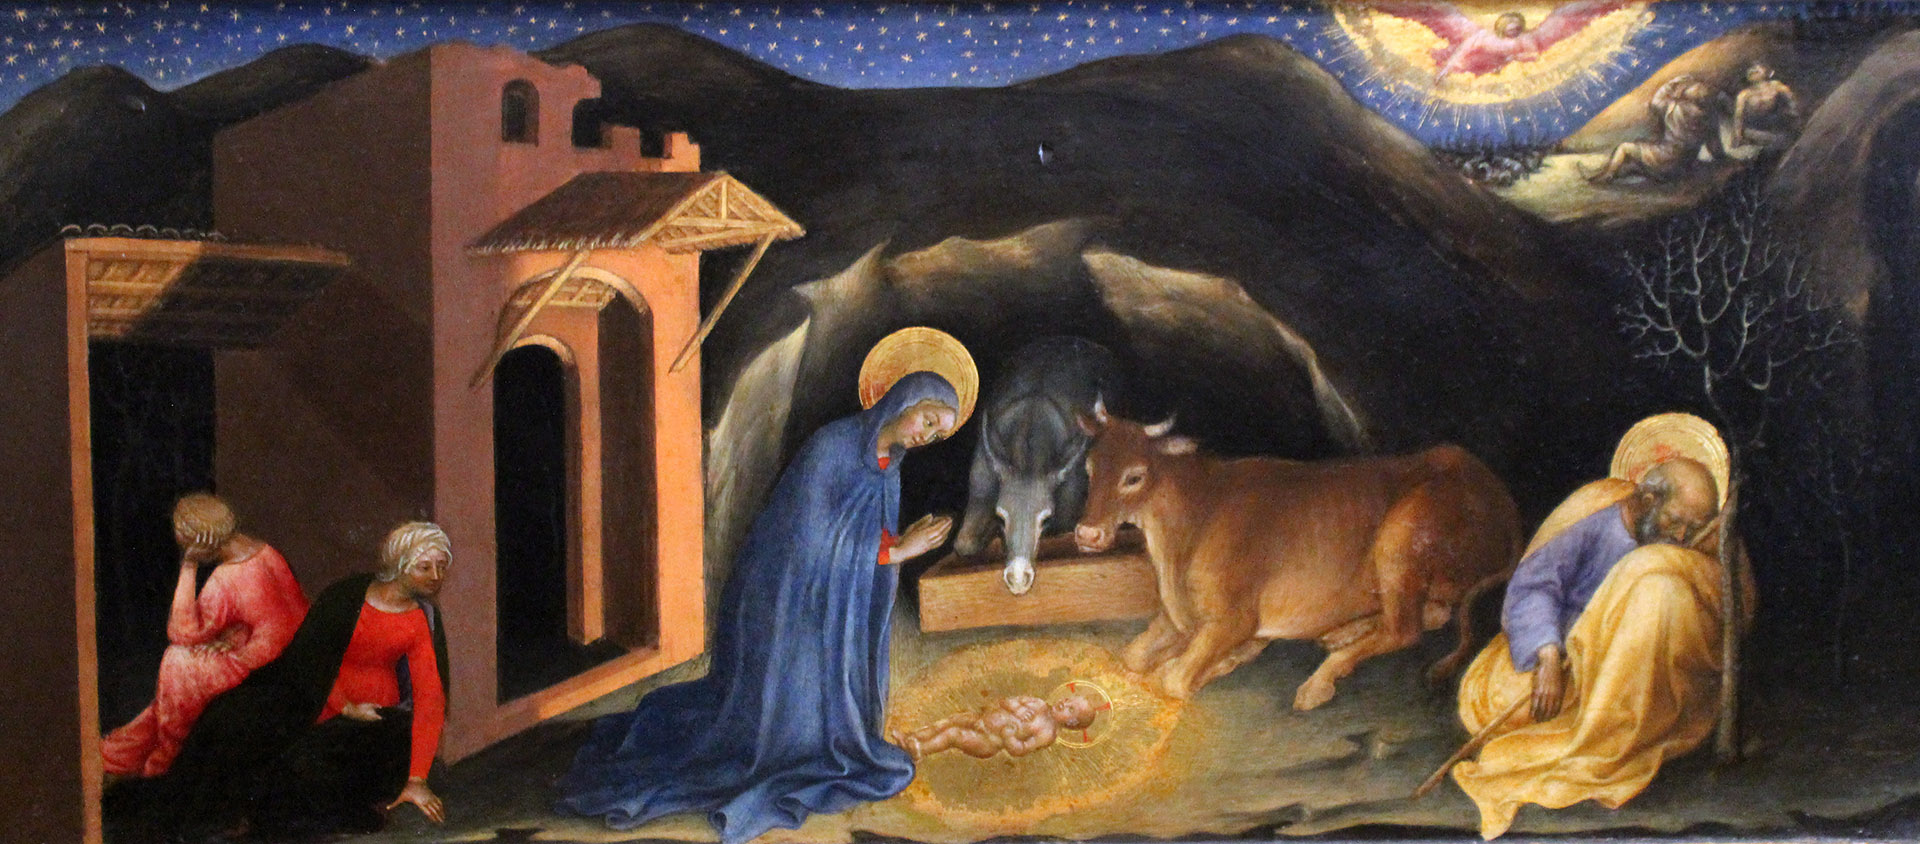 La lumière évoque l'incarnation de Jésus. "Nativité" par Gentile da Fabriano, 1423, tempera sur bois  | © Wikimedia commons